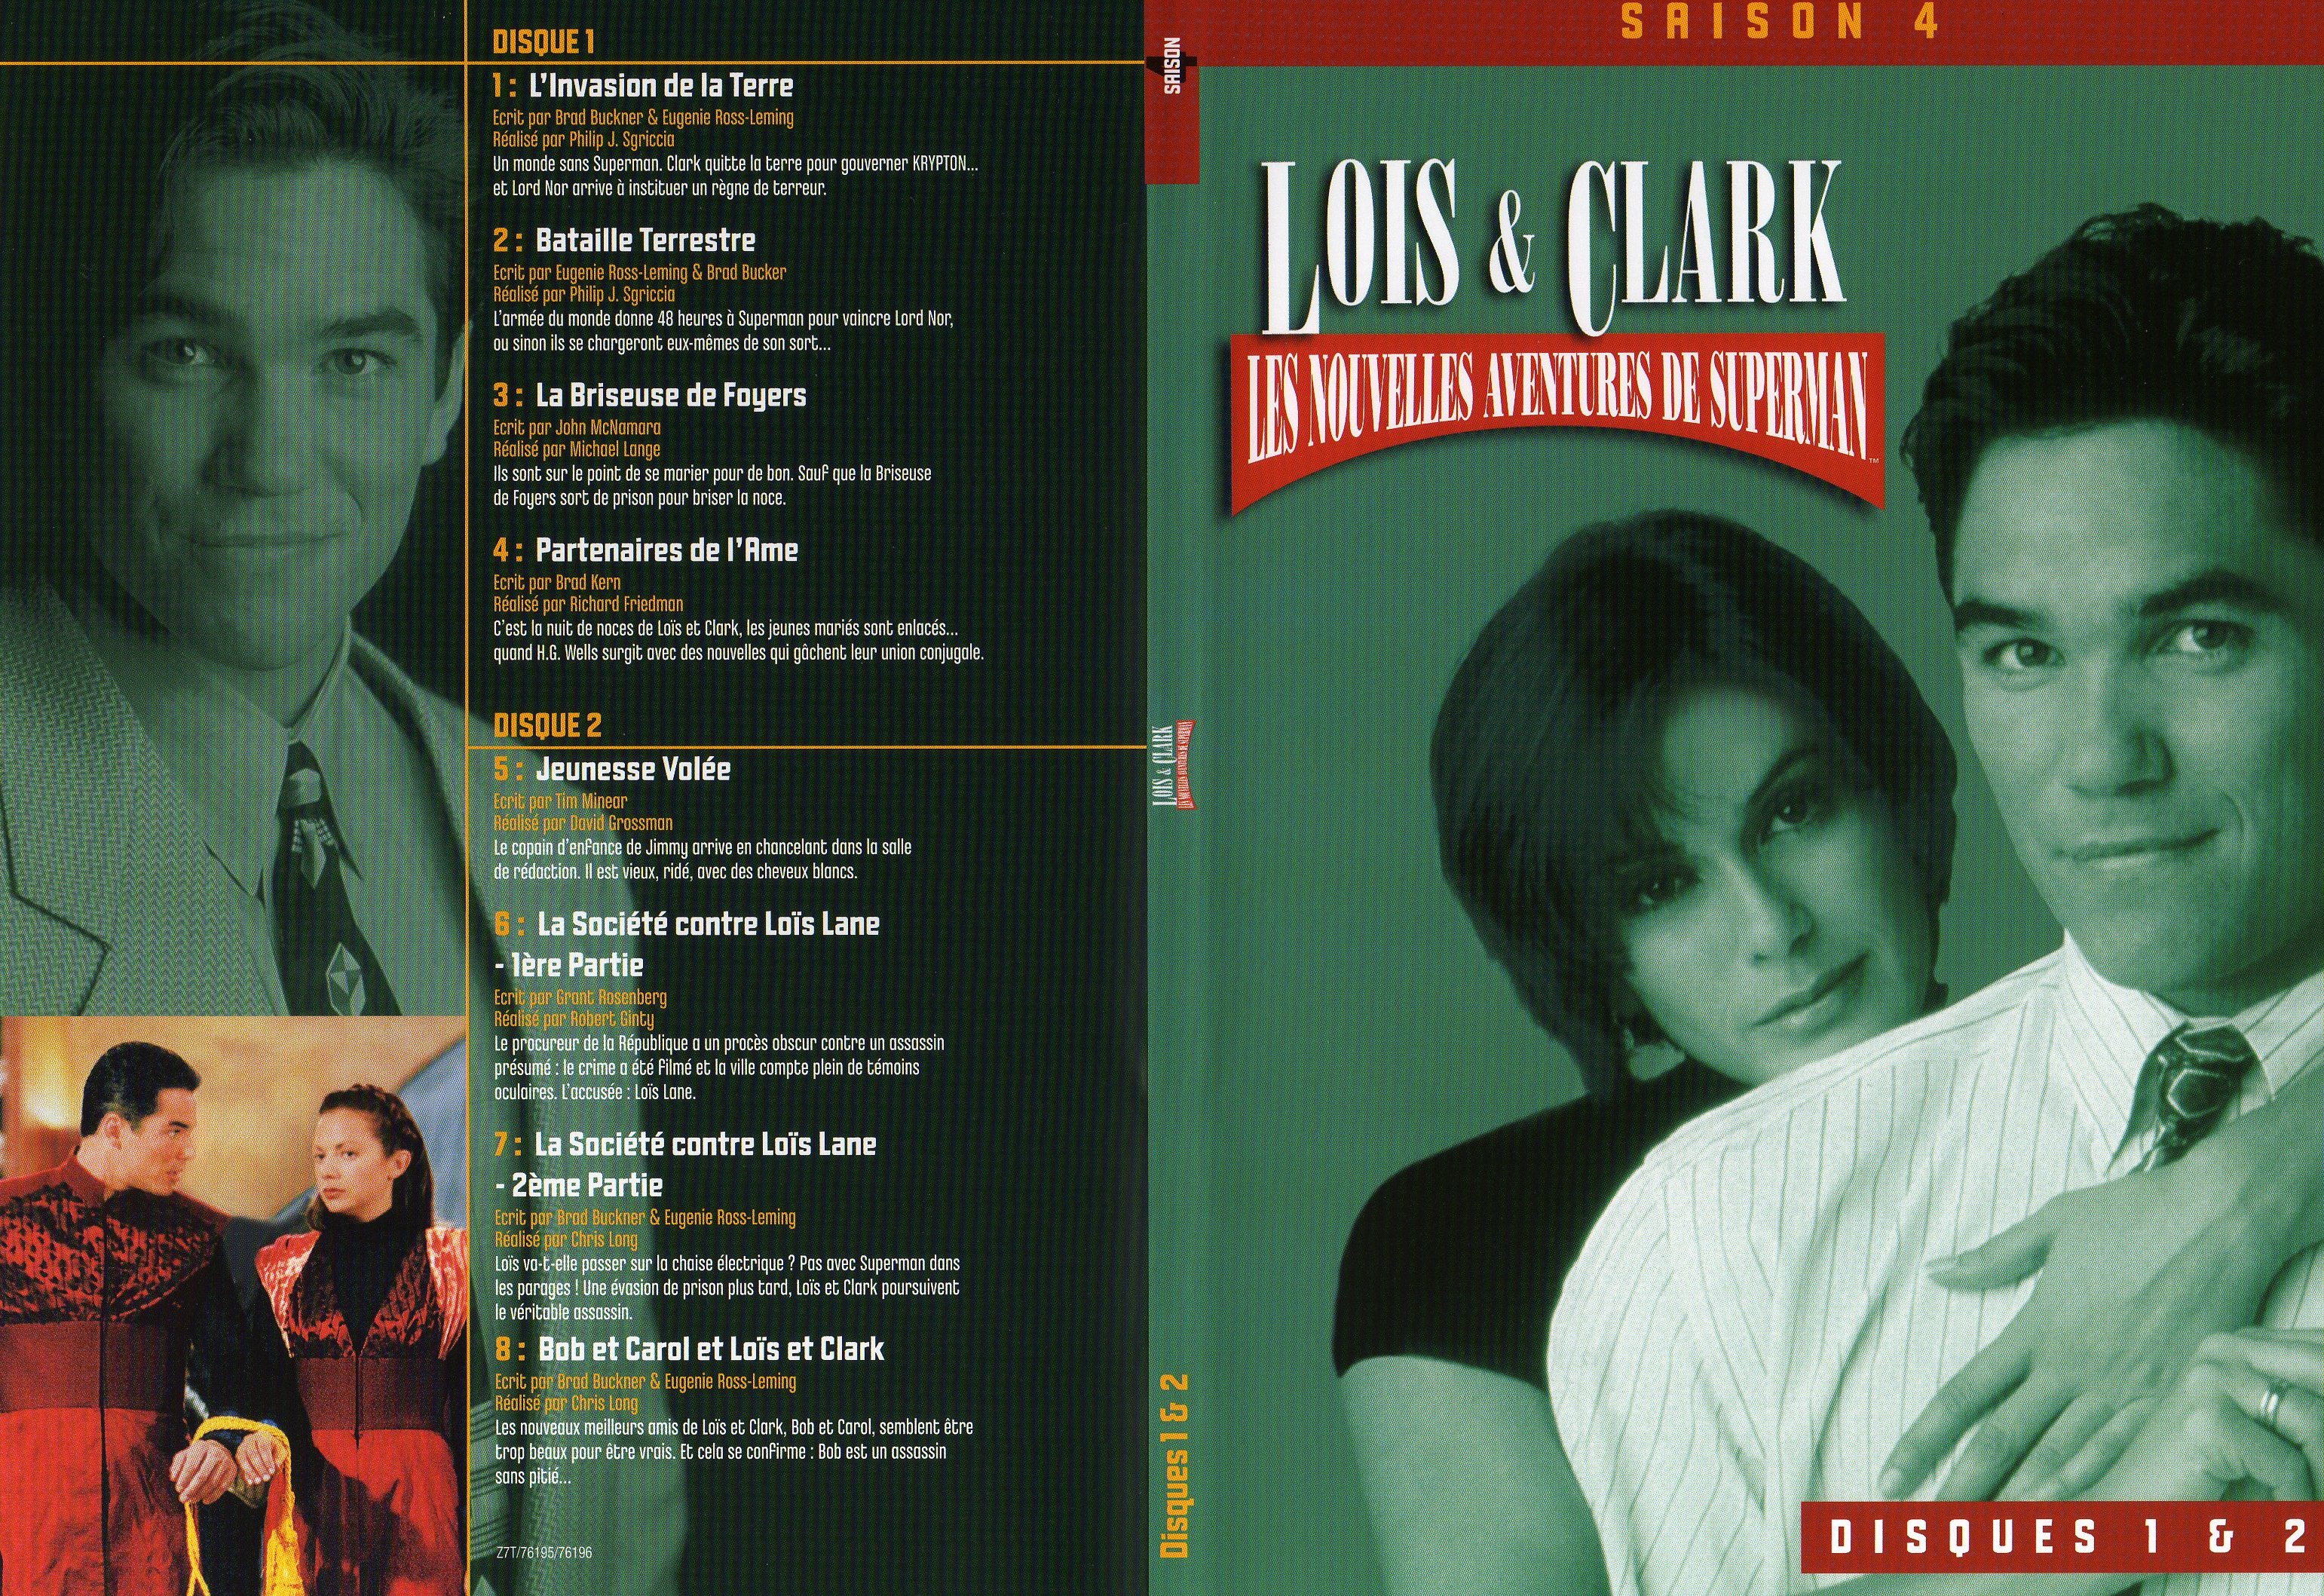 Jaquette DVD Lois et Clark Saison 4 vol 1